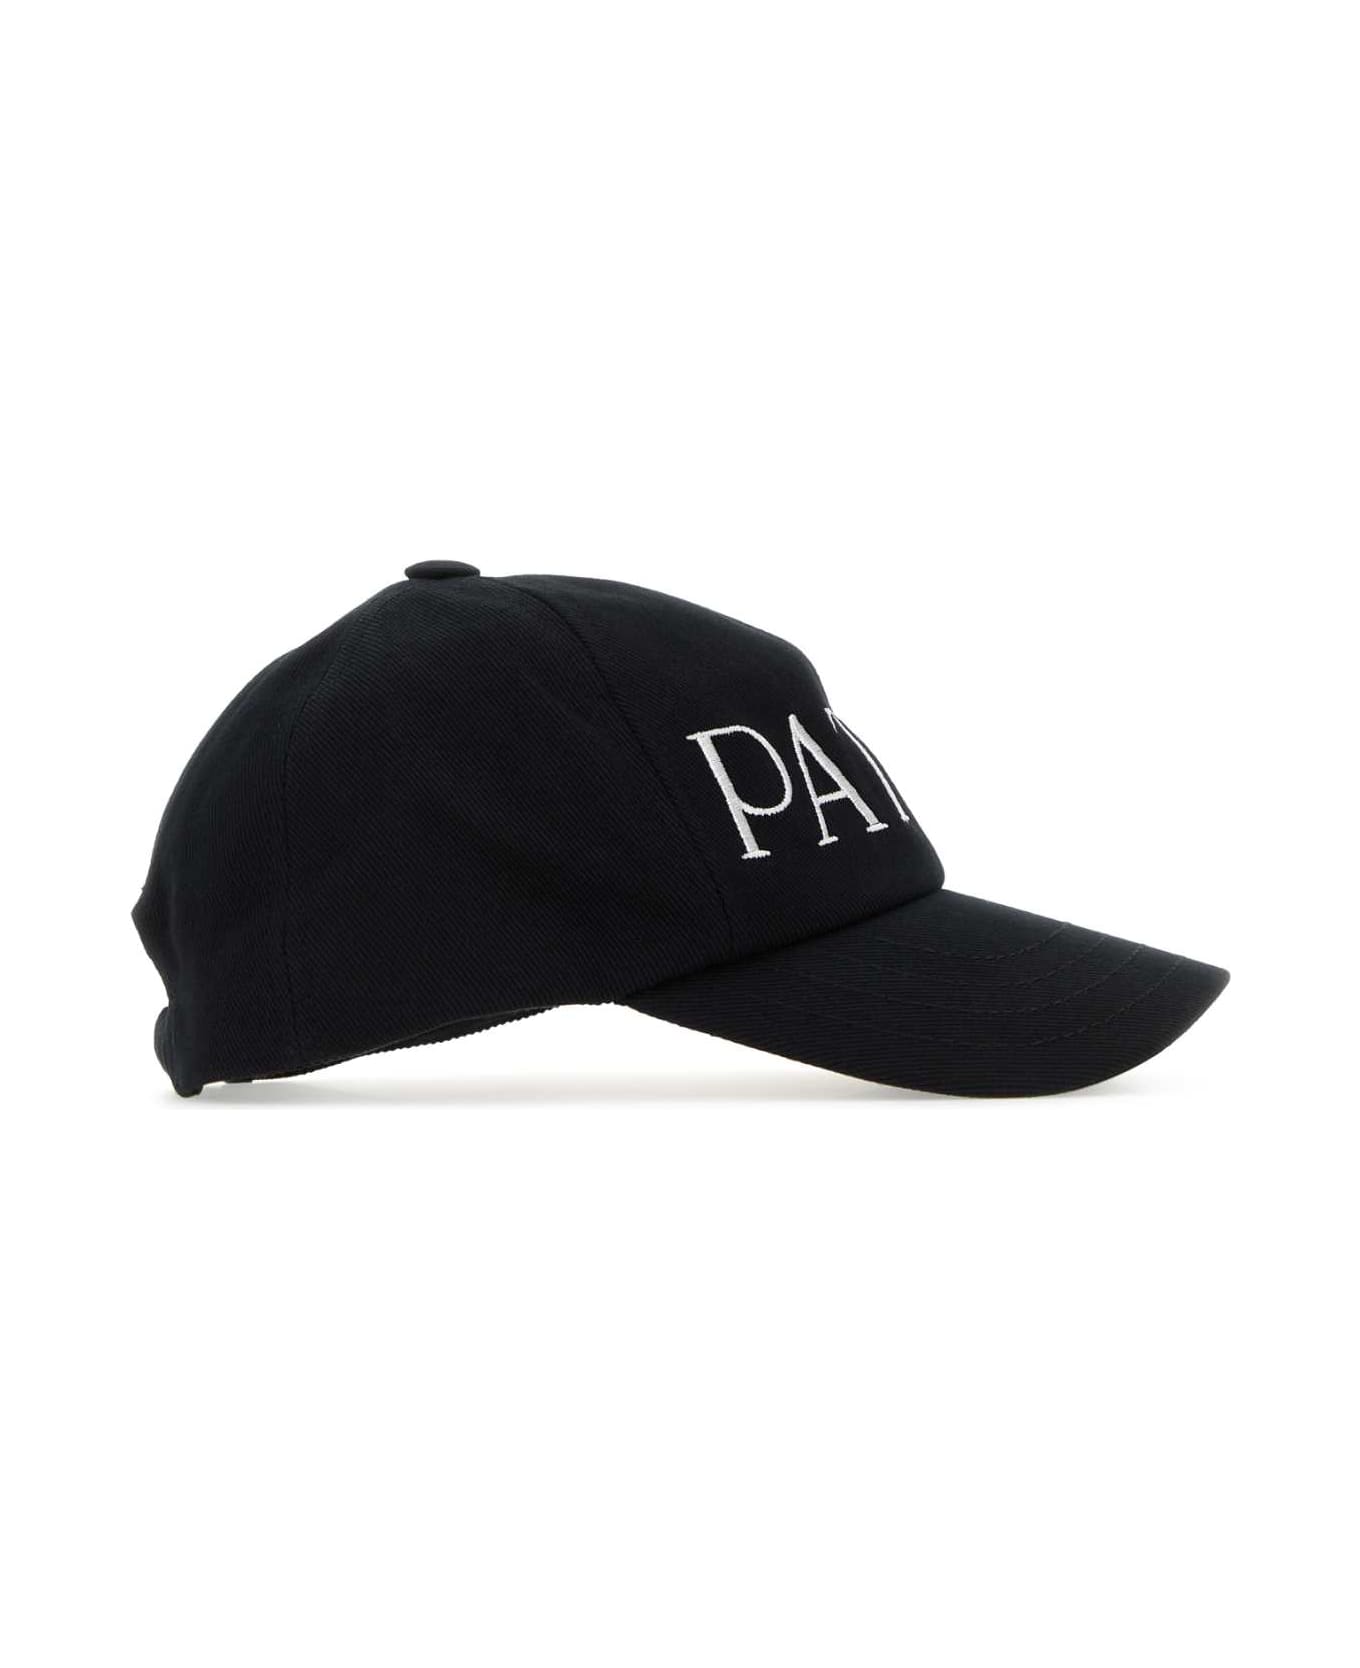 Patou Black Cotton Baseball Cap - 999B